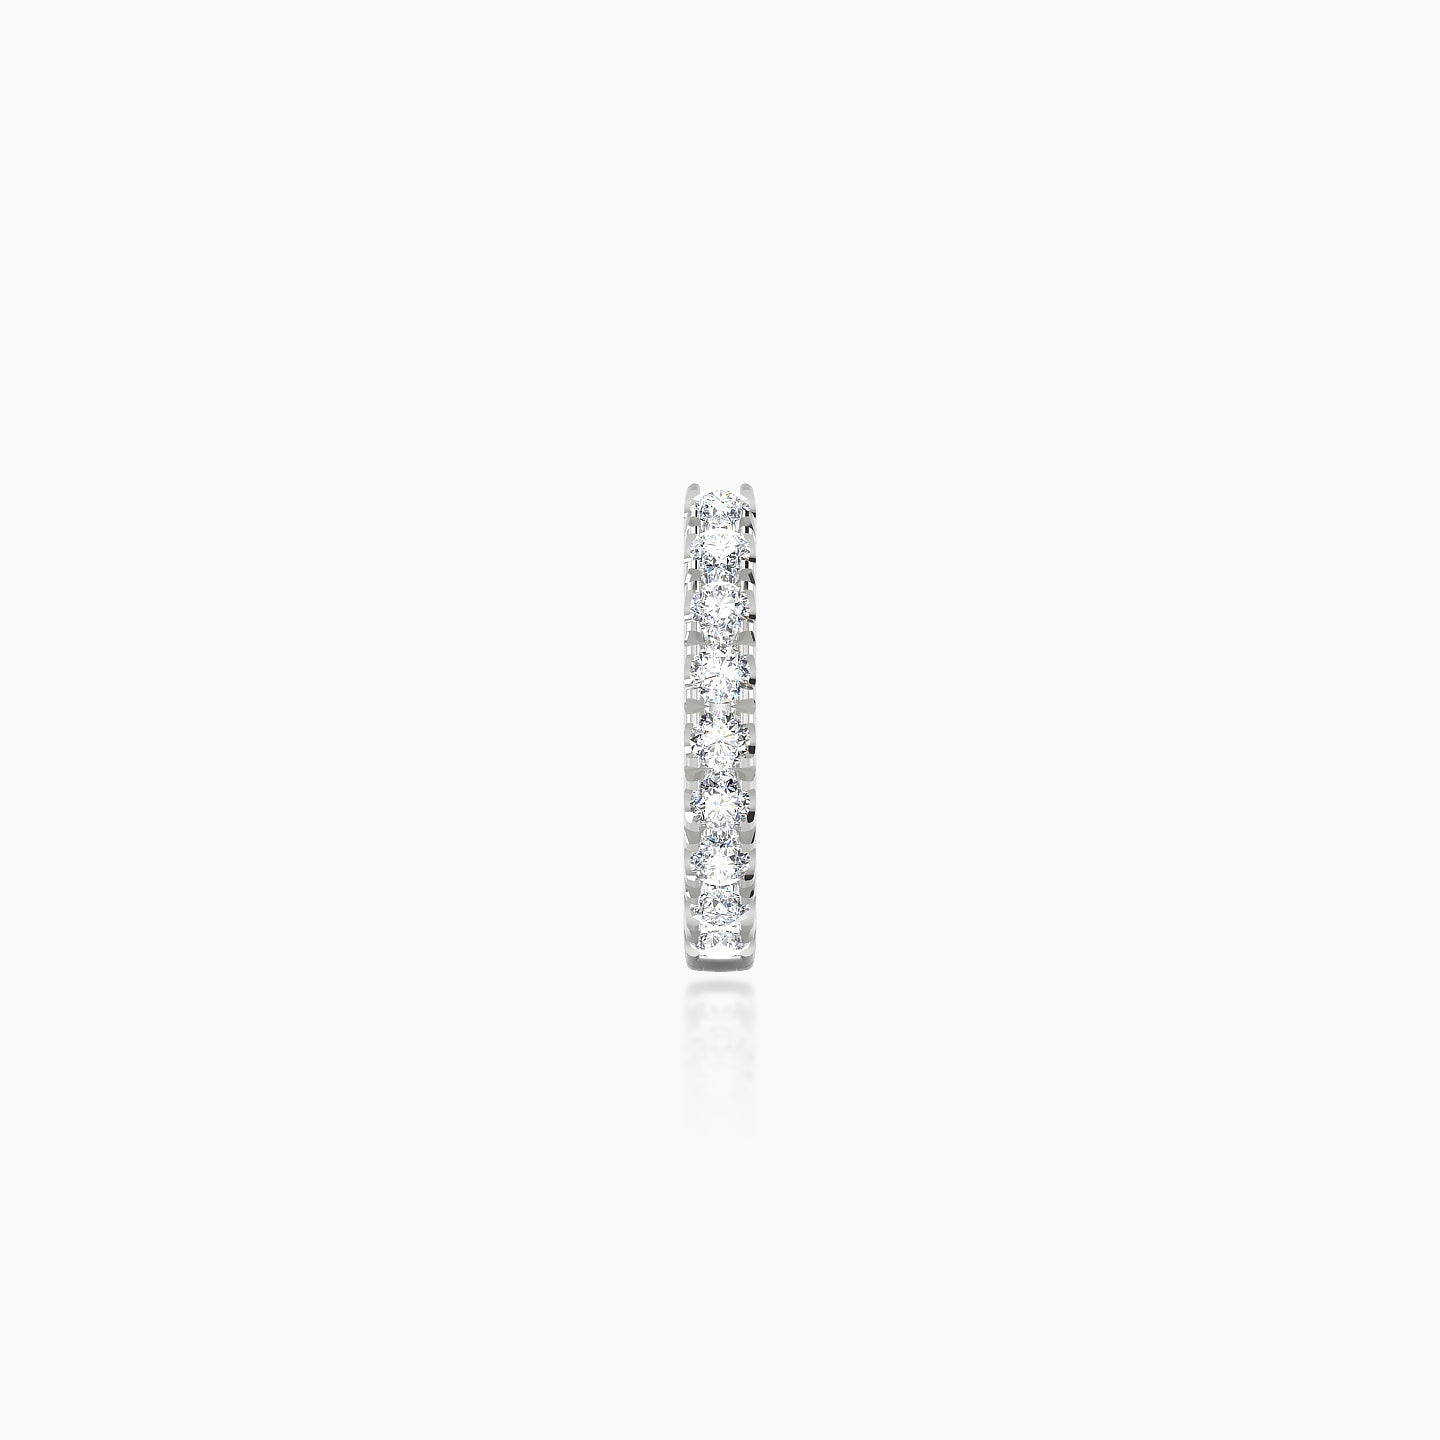 Terra | 18k White Gold 6.5 mm Diamond Nose Ring Piercing